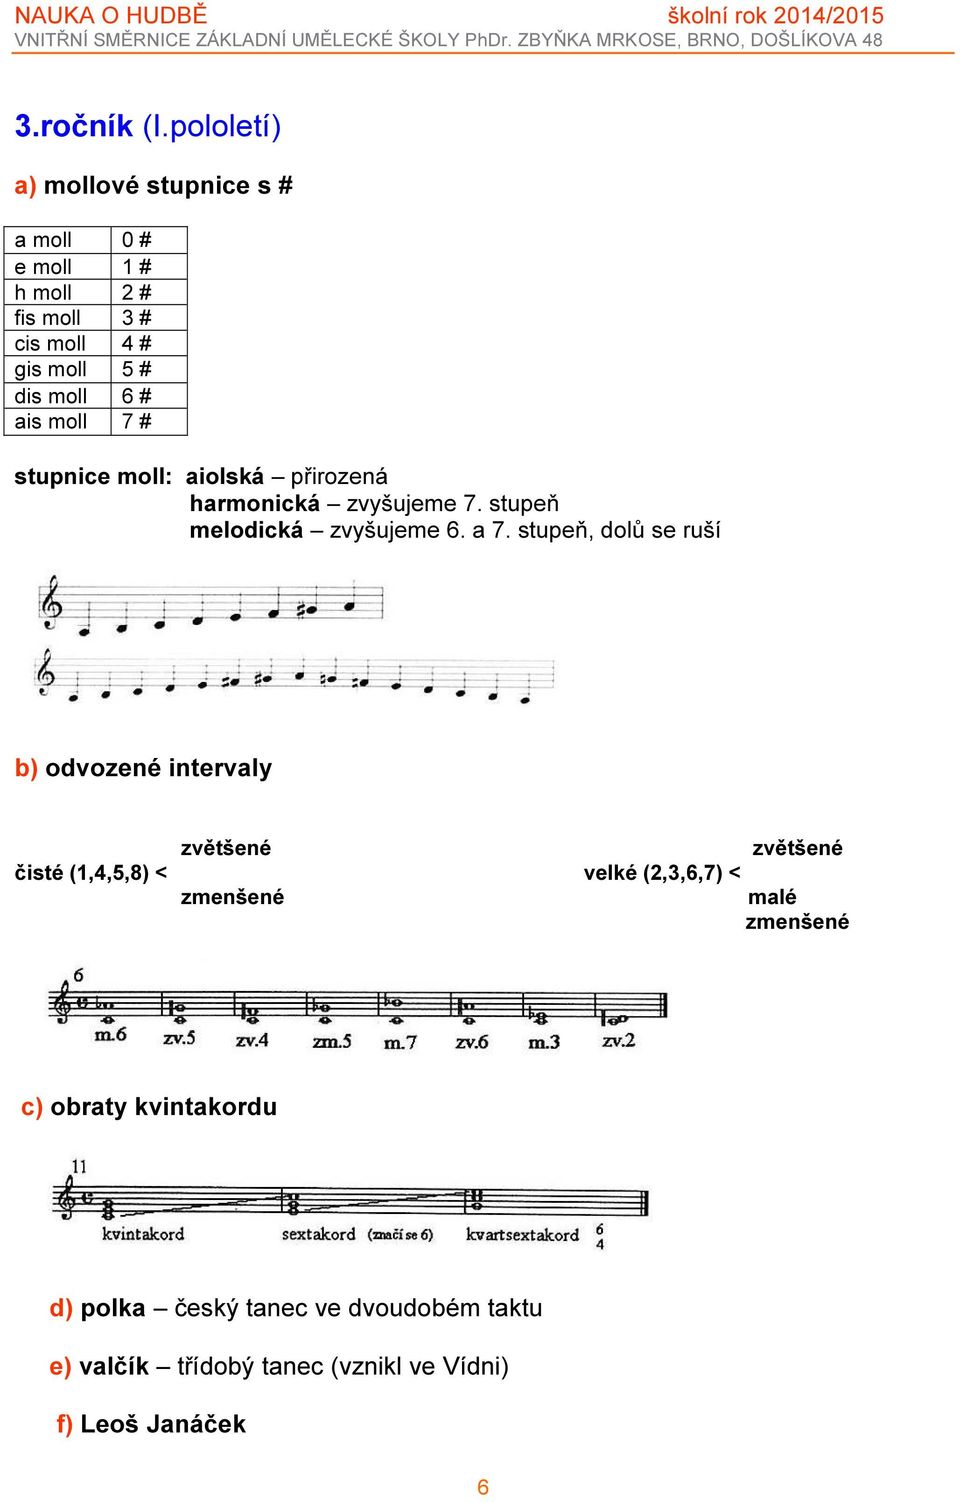 ais moll 7 # stupnice moll: aiolská přirozená harmonická zvyšujeme 7. stupeň melodická zvyšujeme 6. a 7.